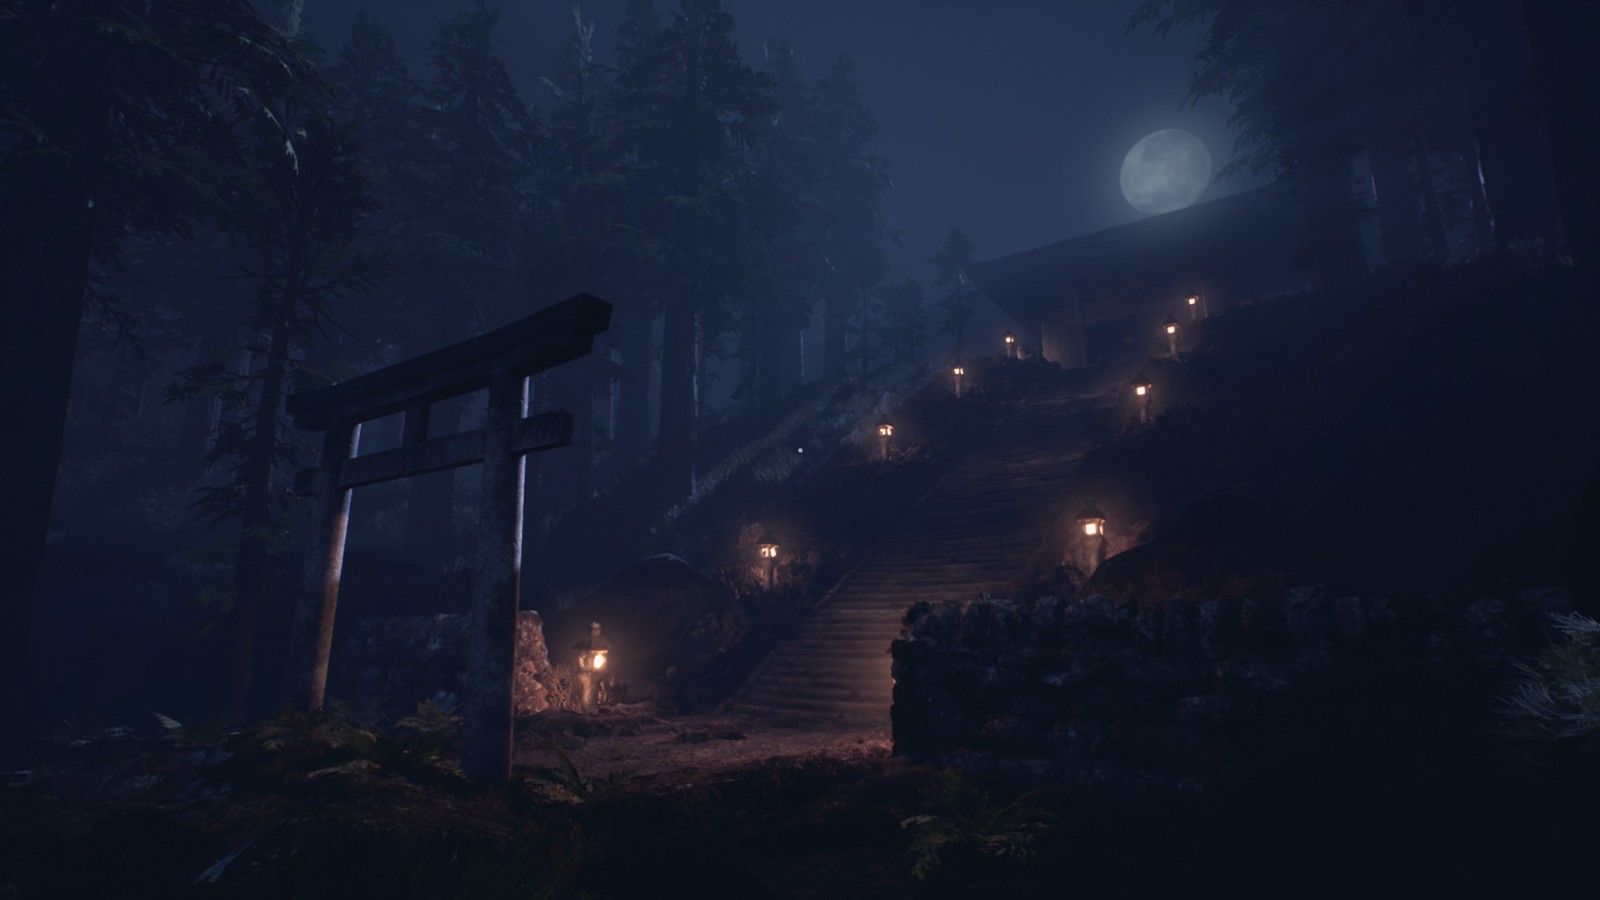 午夜凶铃风格恐怖游戏《Ikai》现已发售 第一人称视角感受日本民间传说的诡异离奇